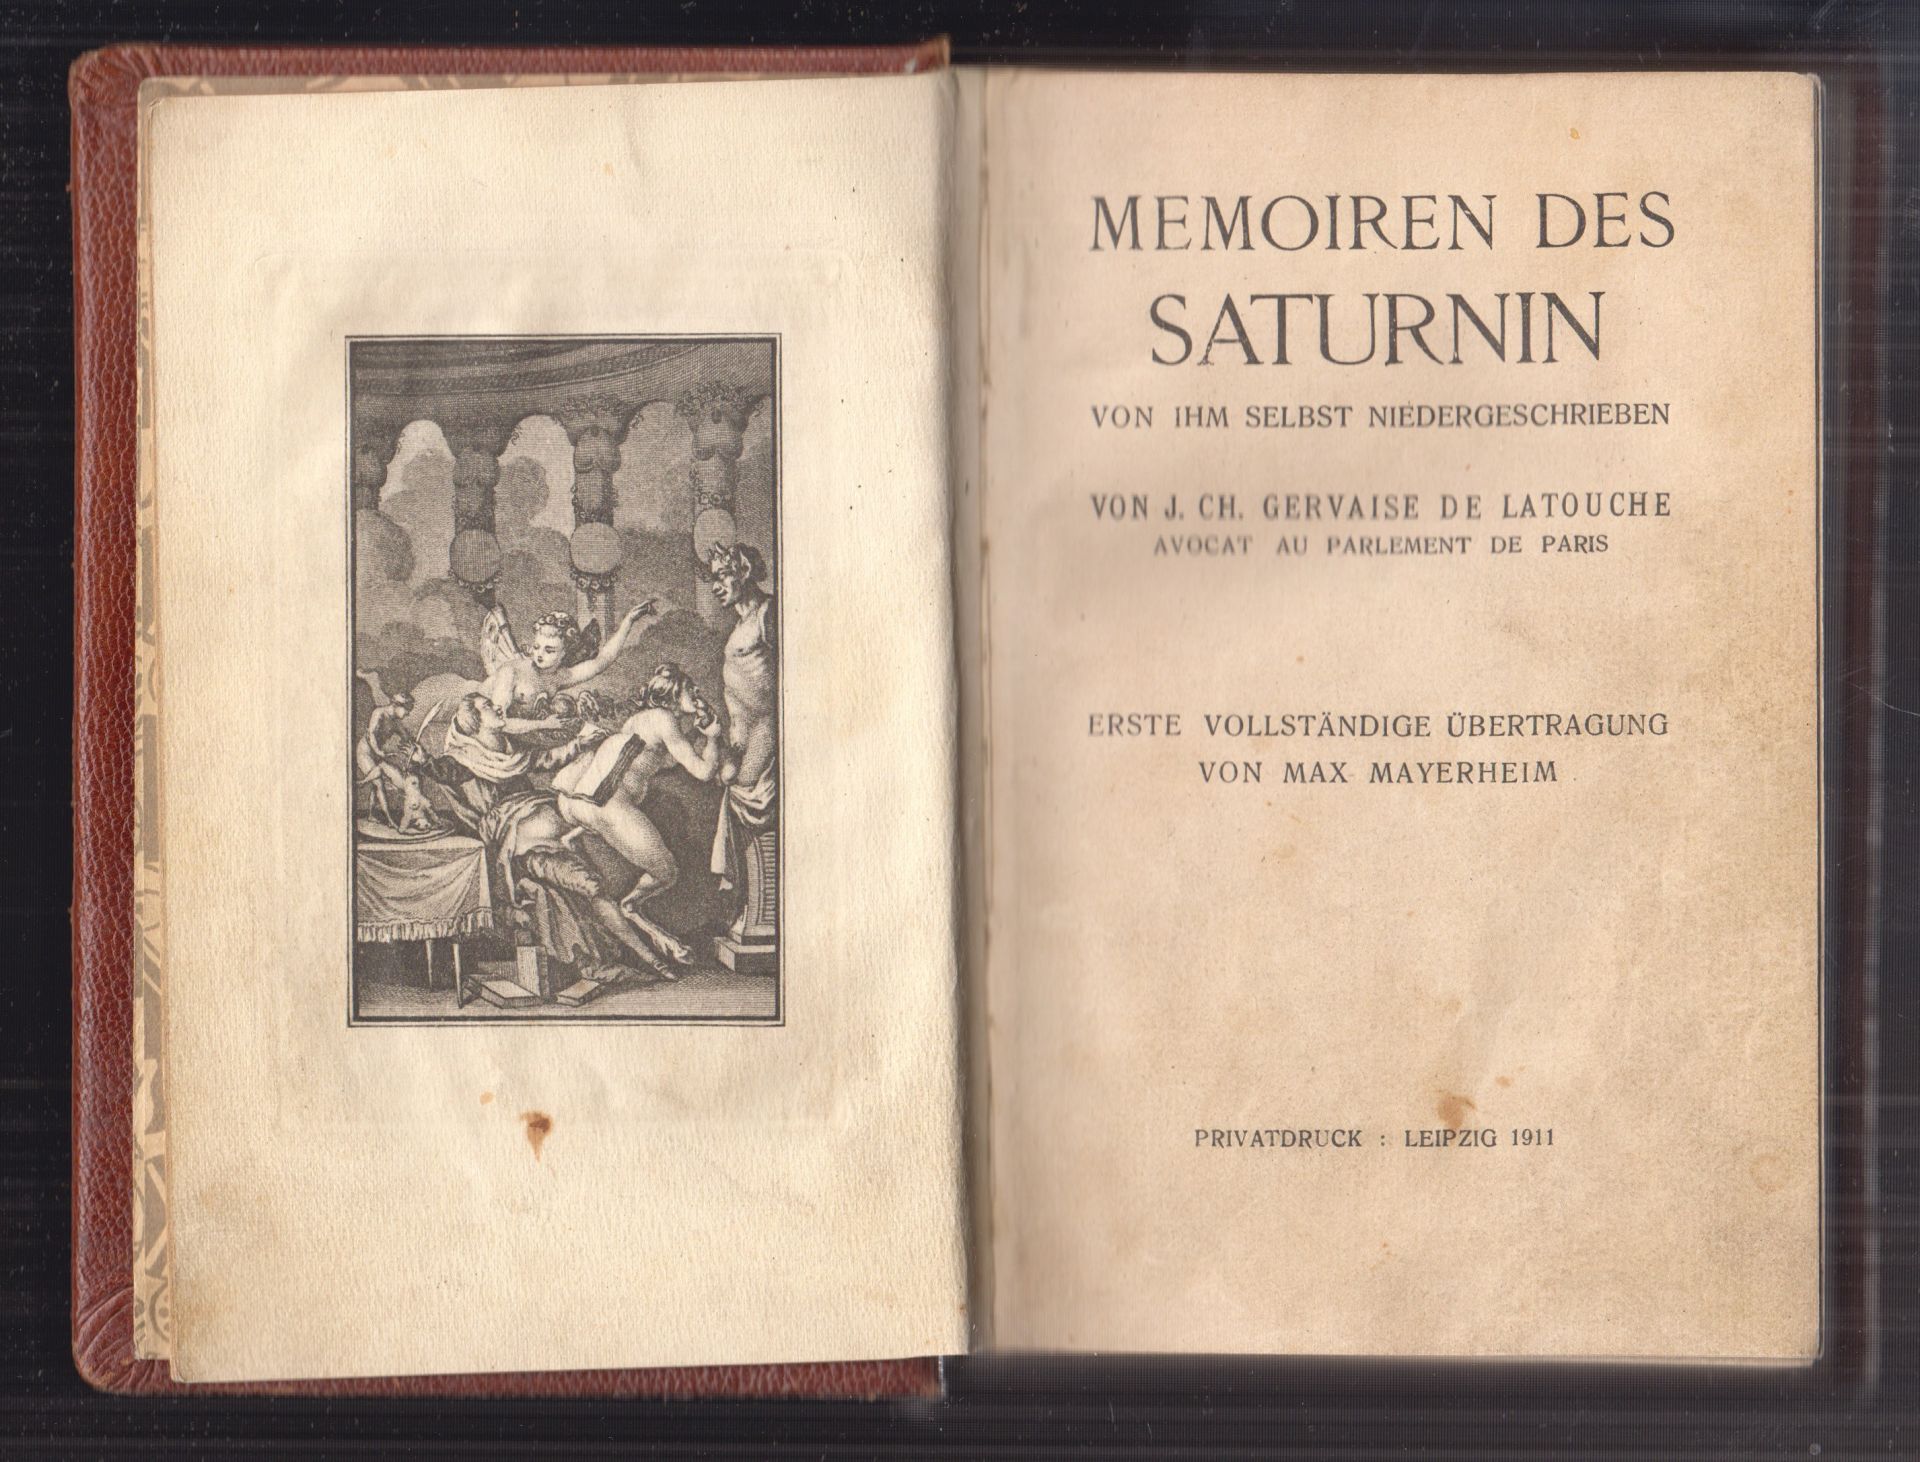 LATOUCHE, J. Ch. Gervaise. Memoiren des Saturnin von ihm selbst niedergeschrieben. Erste vollstndige bertragung von Max Mayerheim.